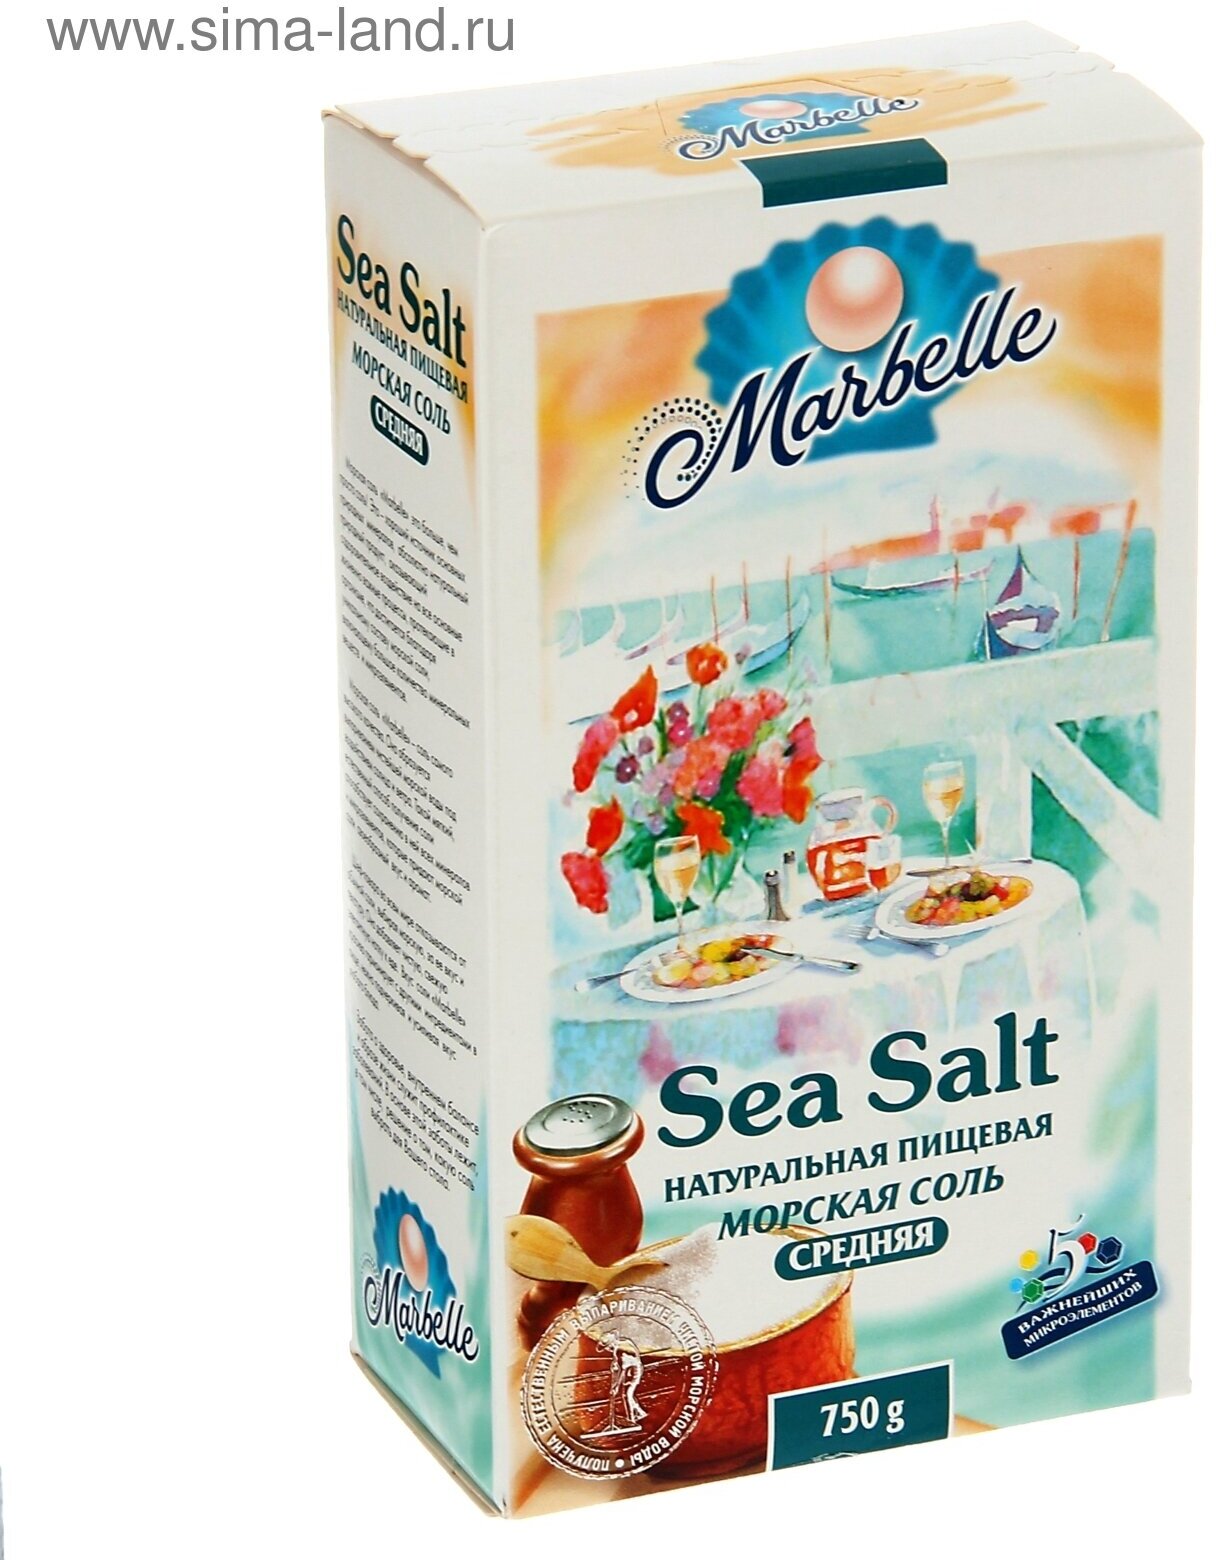 Соль морская пищевая средний помол №1 Marbelle 750 гр.